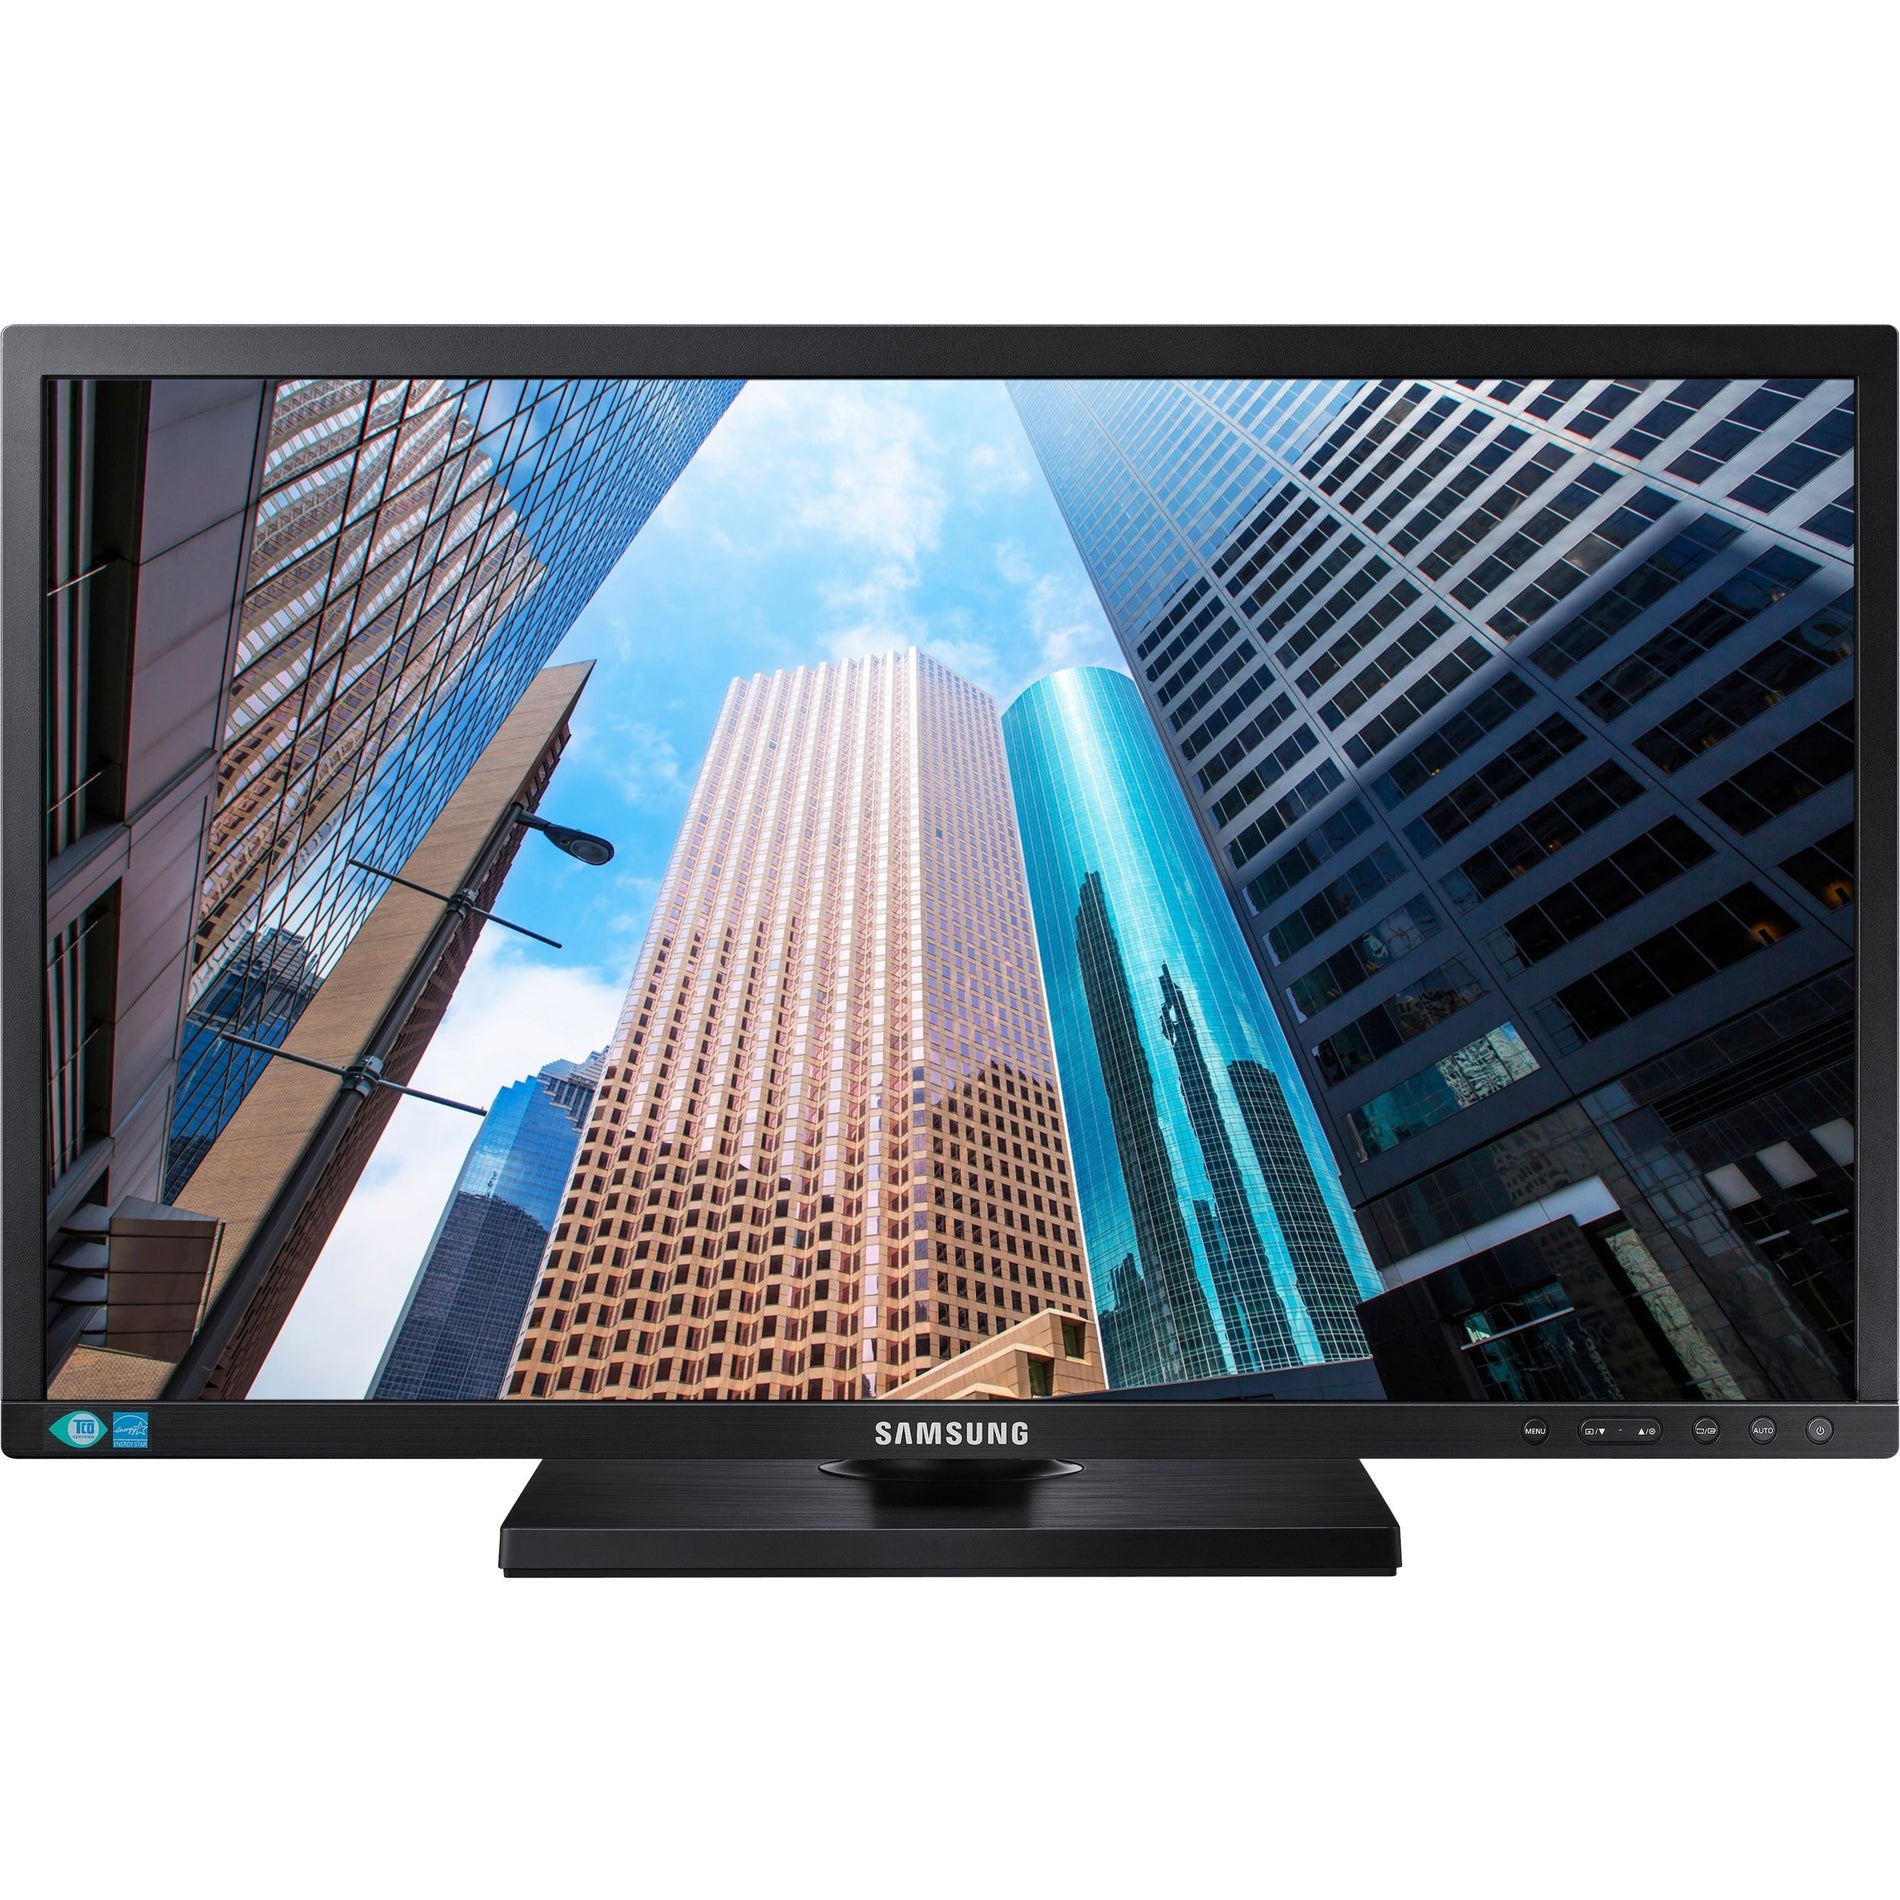 Samsung S24E450DL 23.6" Full HD LCD Monitor - Matte Black, Ergonomic Design, Energy Star Certified